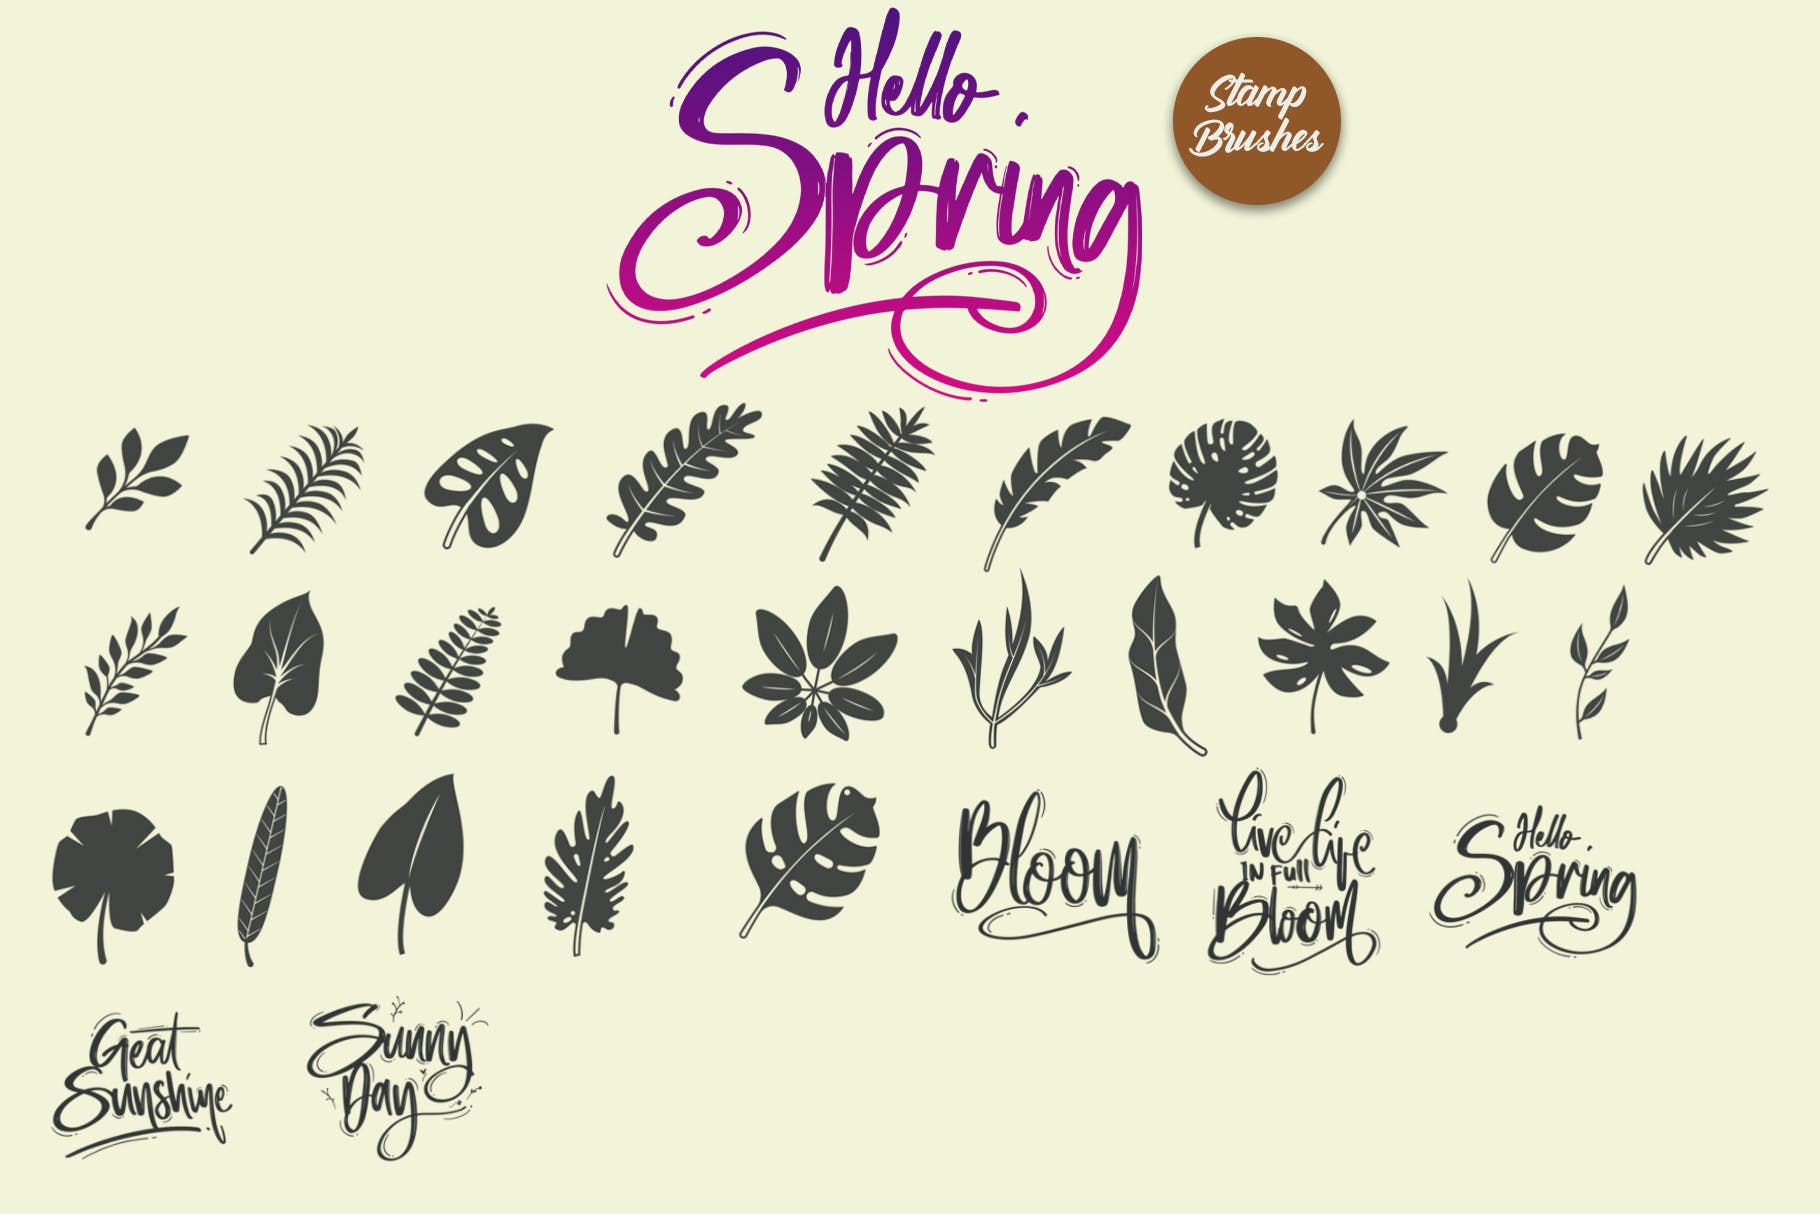 春天叶子元素印章Procreate笔刷 Hello Spring | Stamp Brushes 笔刷资源 第6张